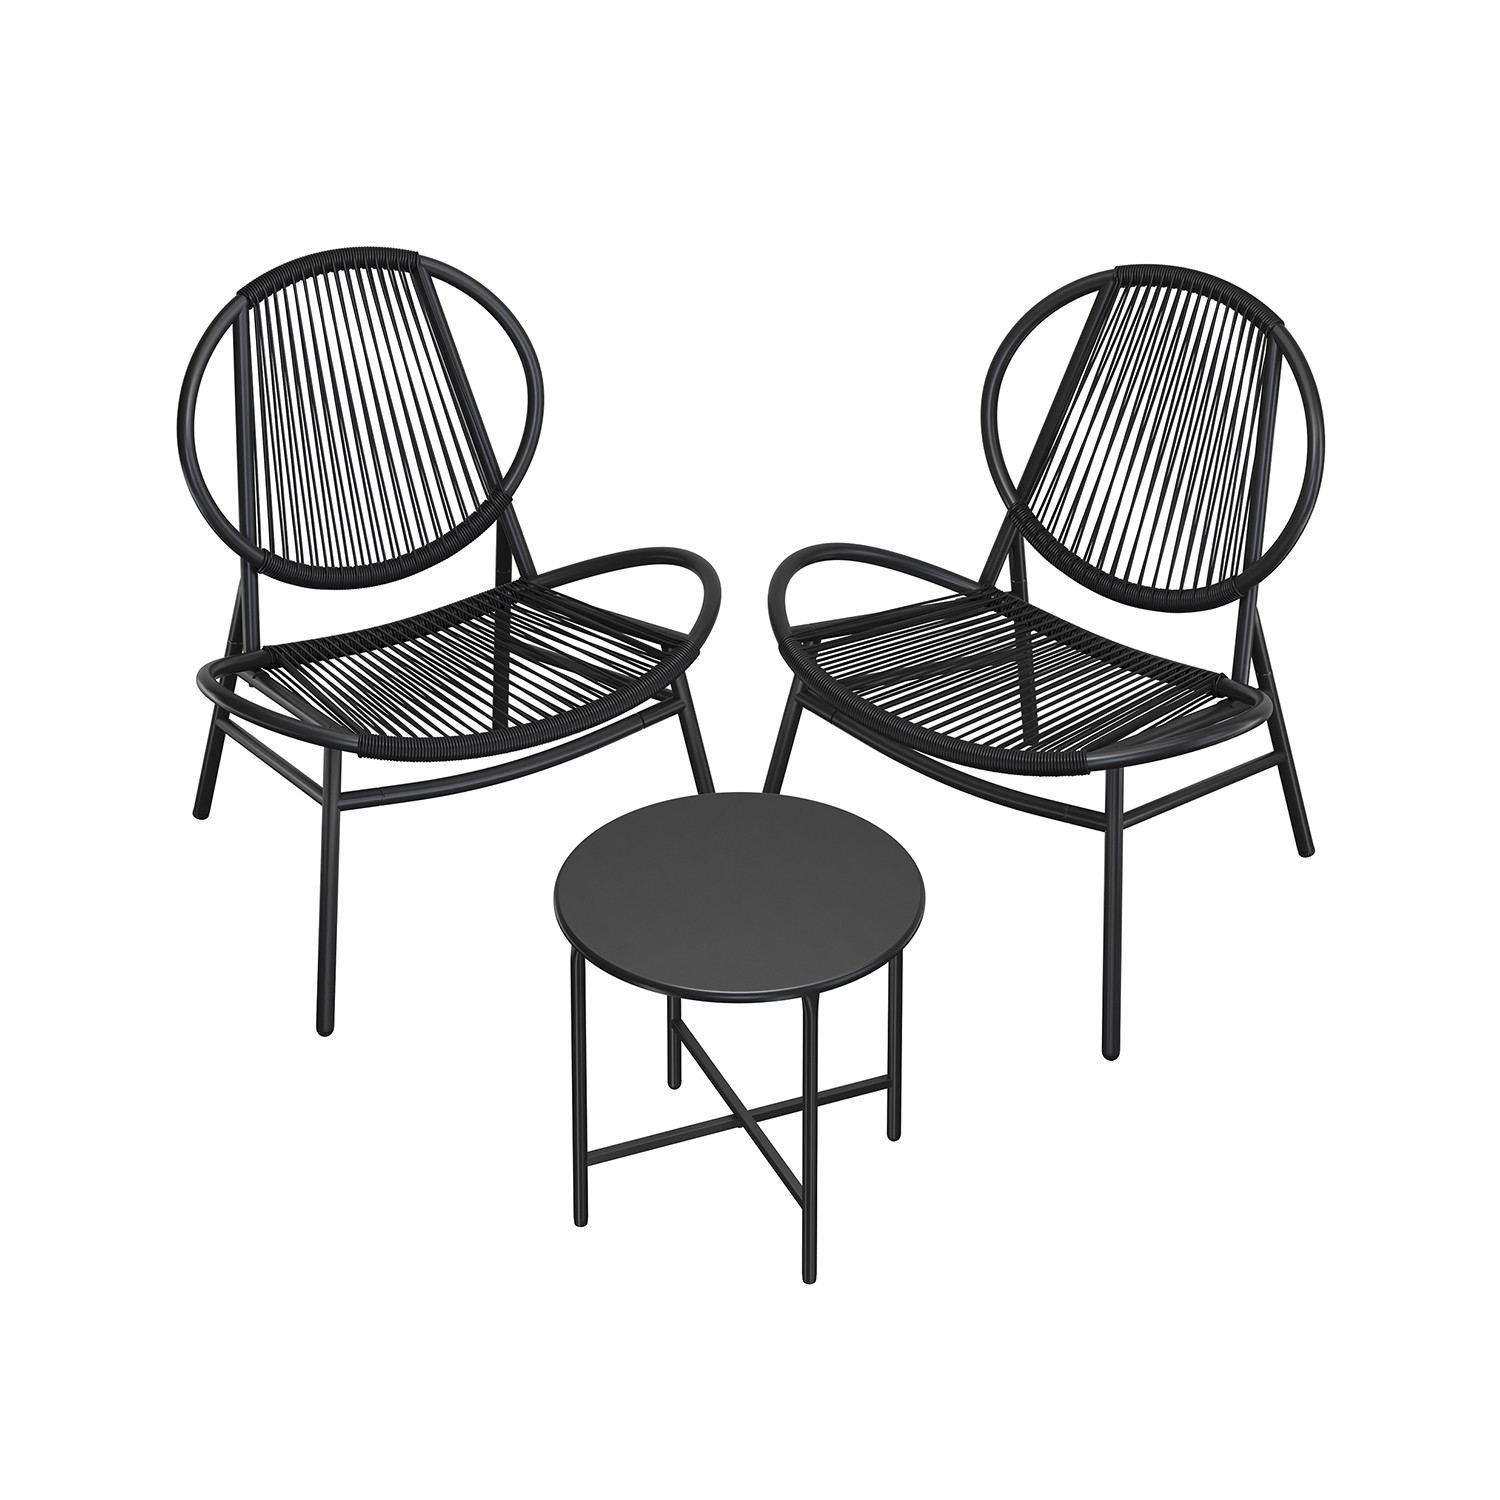 Zahradní židle se stolkem GGF021B01